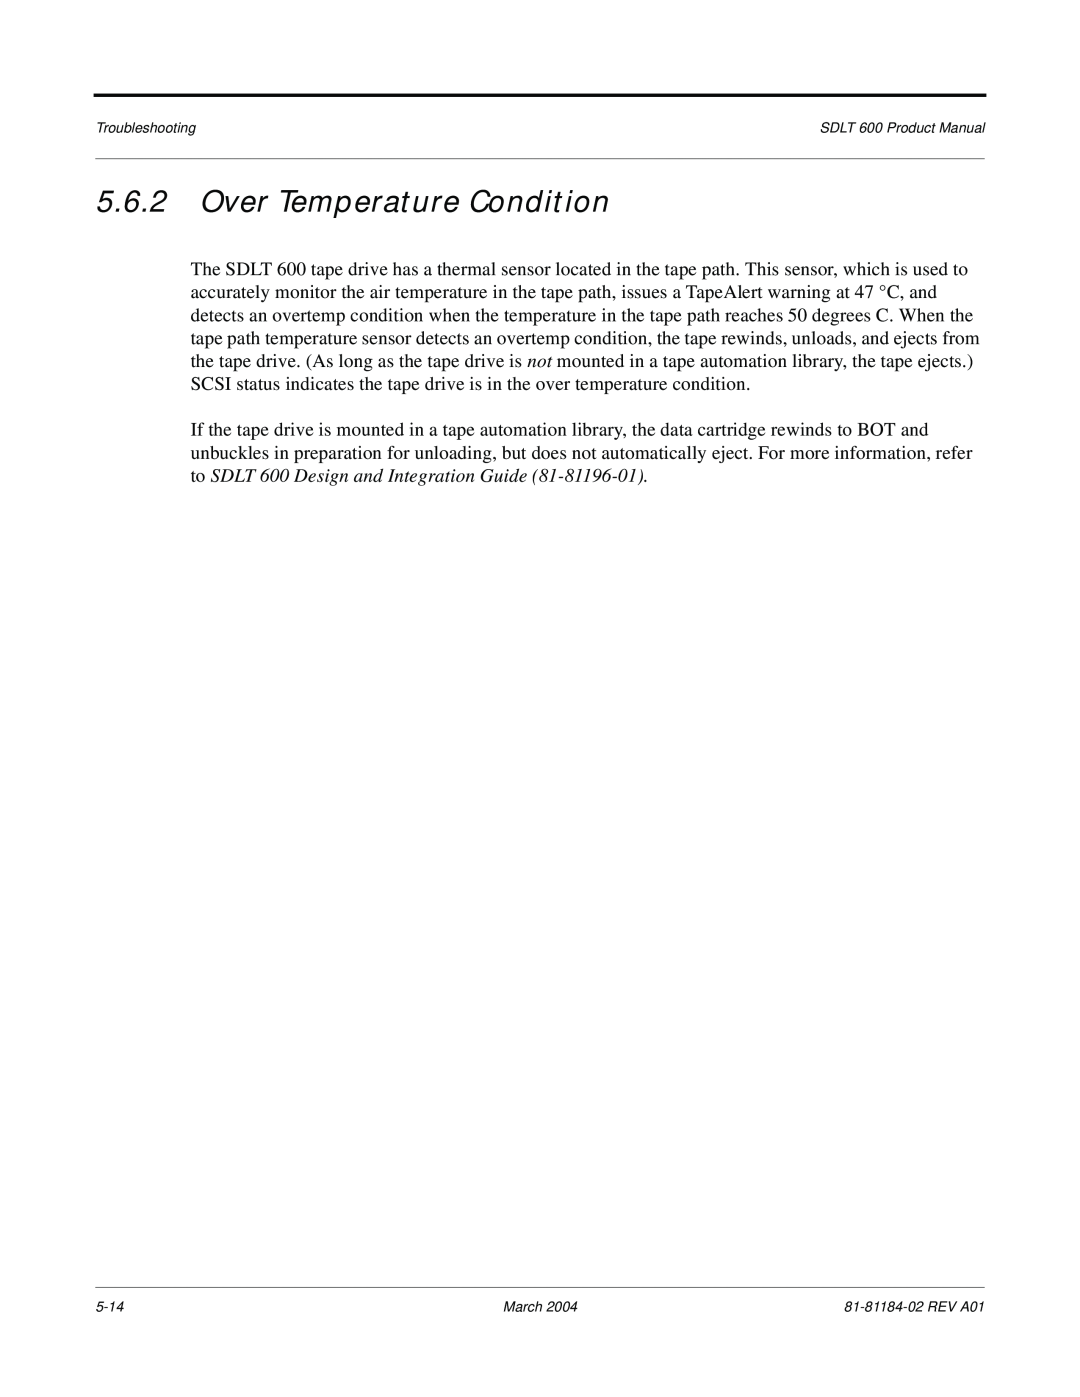 Tandberg Data 600 manual Over Temperature Condition 